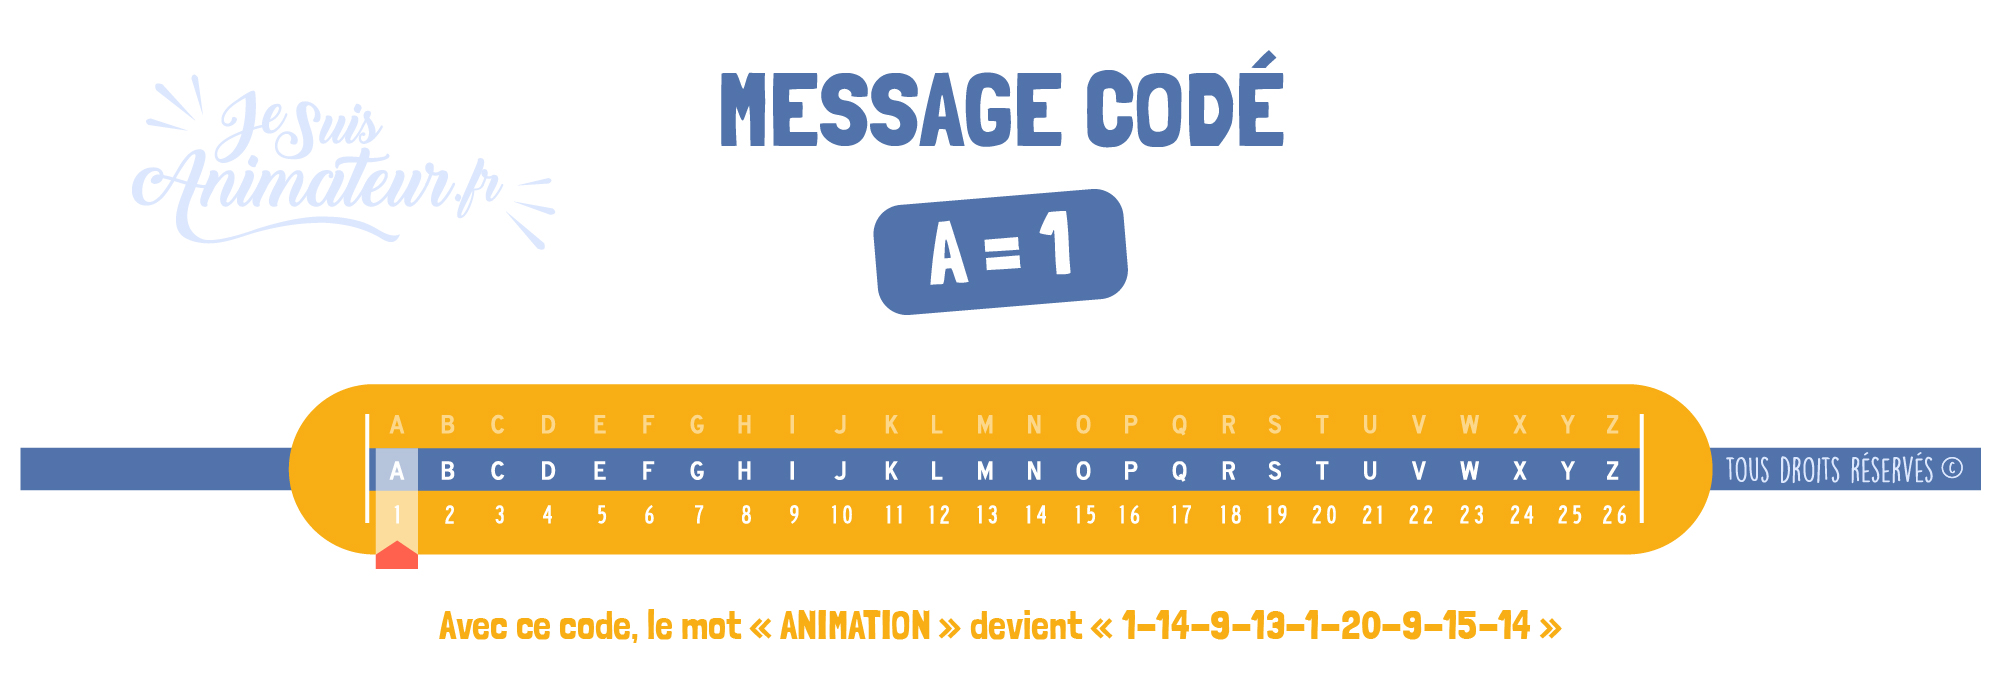 Message codé « Alphabet chiffré » (A = 1)